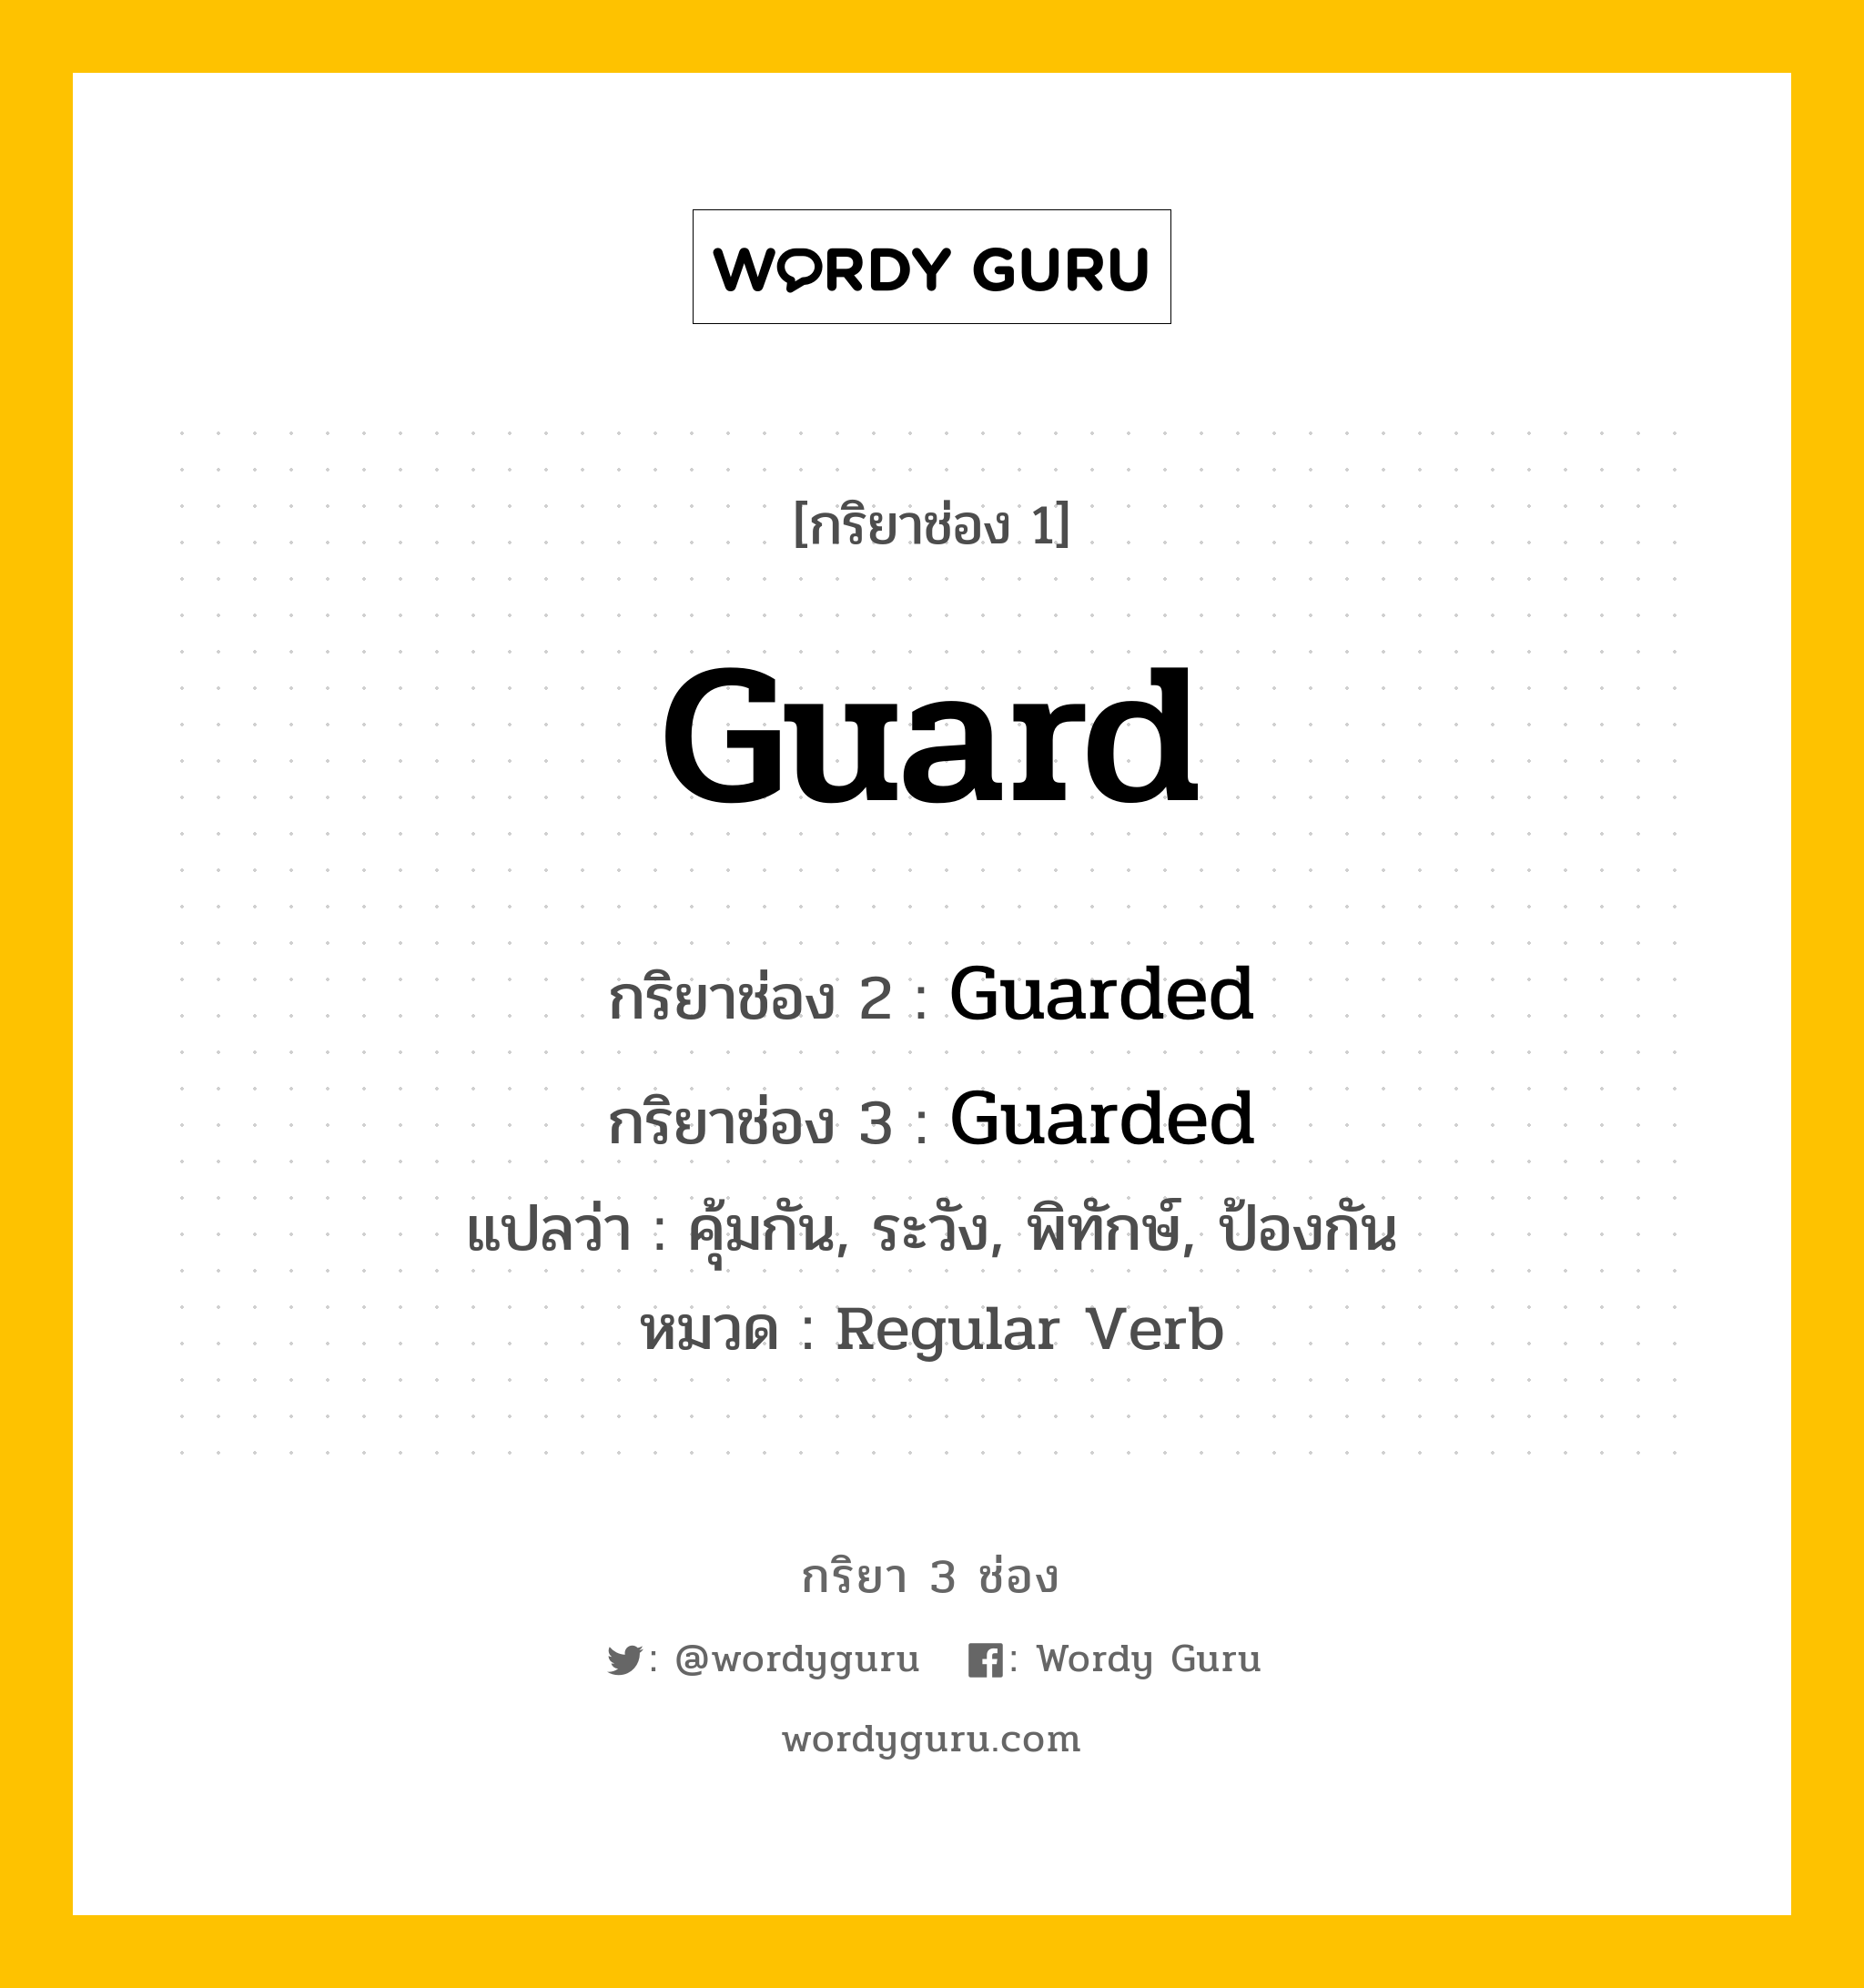 กริยา 3 ช่อง: Guard ช่อง 2 Guard ช่อง 3 คืออะไร, กริยาช่อง 1 Guard กริยาช่อง 2 Guarded กริยาช่อง 3 Guarded แปลว่า คุ้มกัน, ระวัง, พิทักษ์, ป้องกัน หมวด Regular Verb หมวด Regular Verb